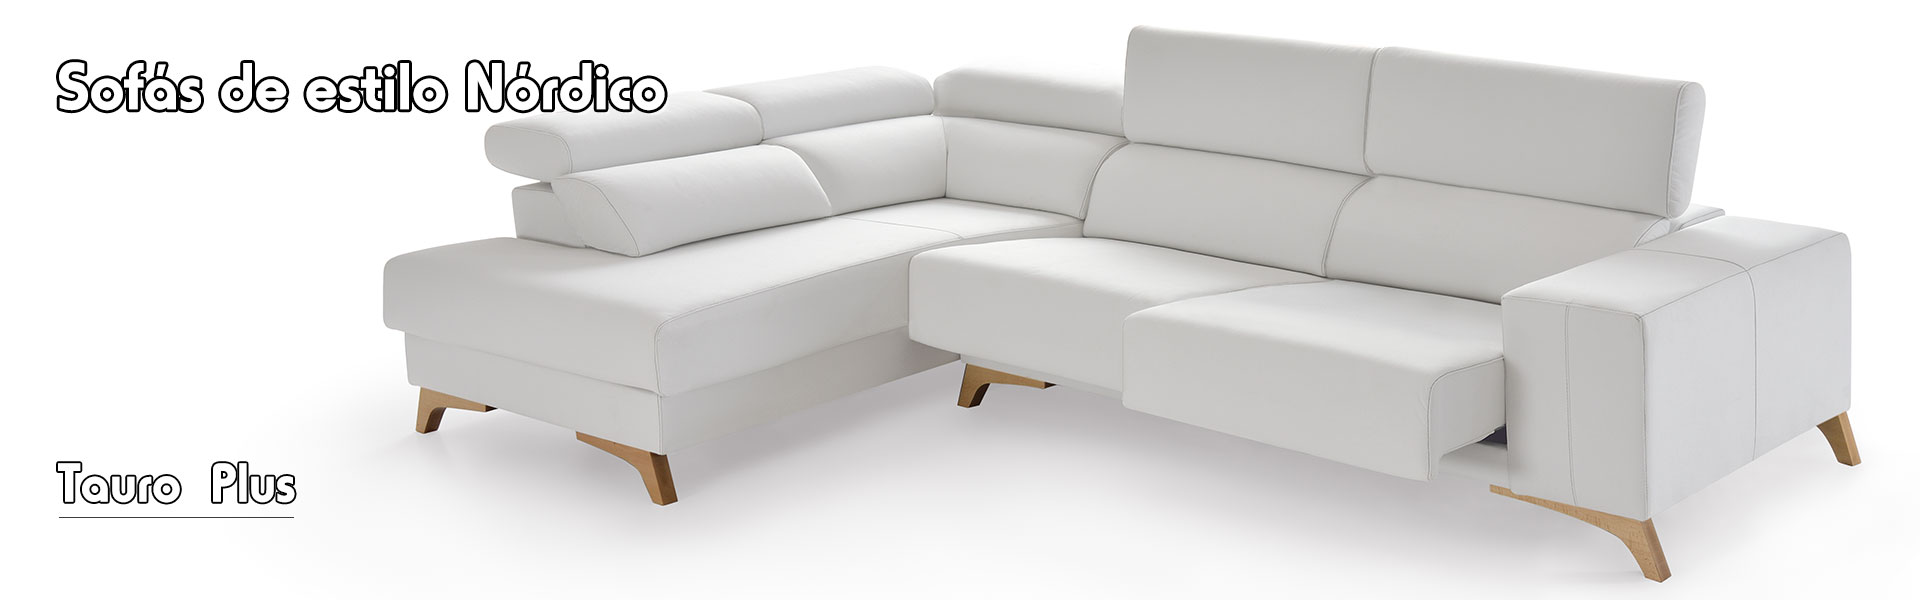 Sofa estilo nordico